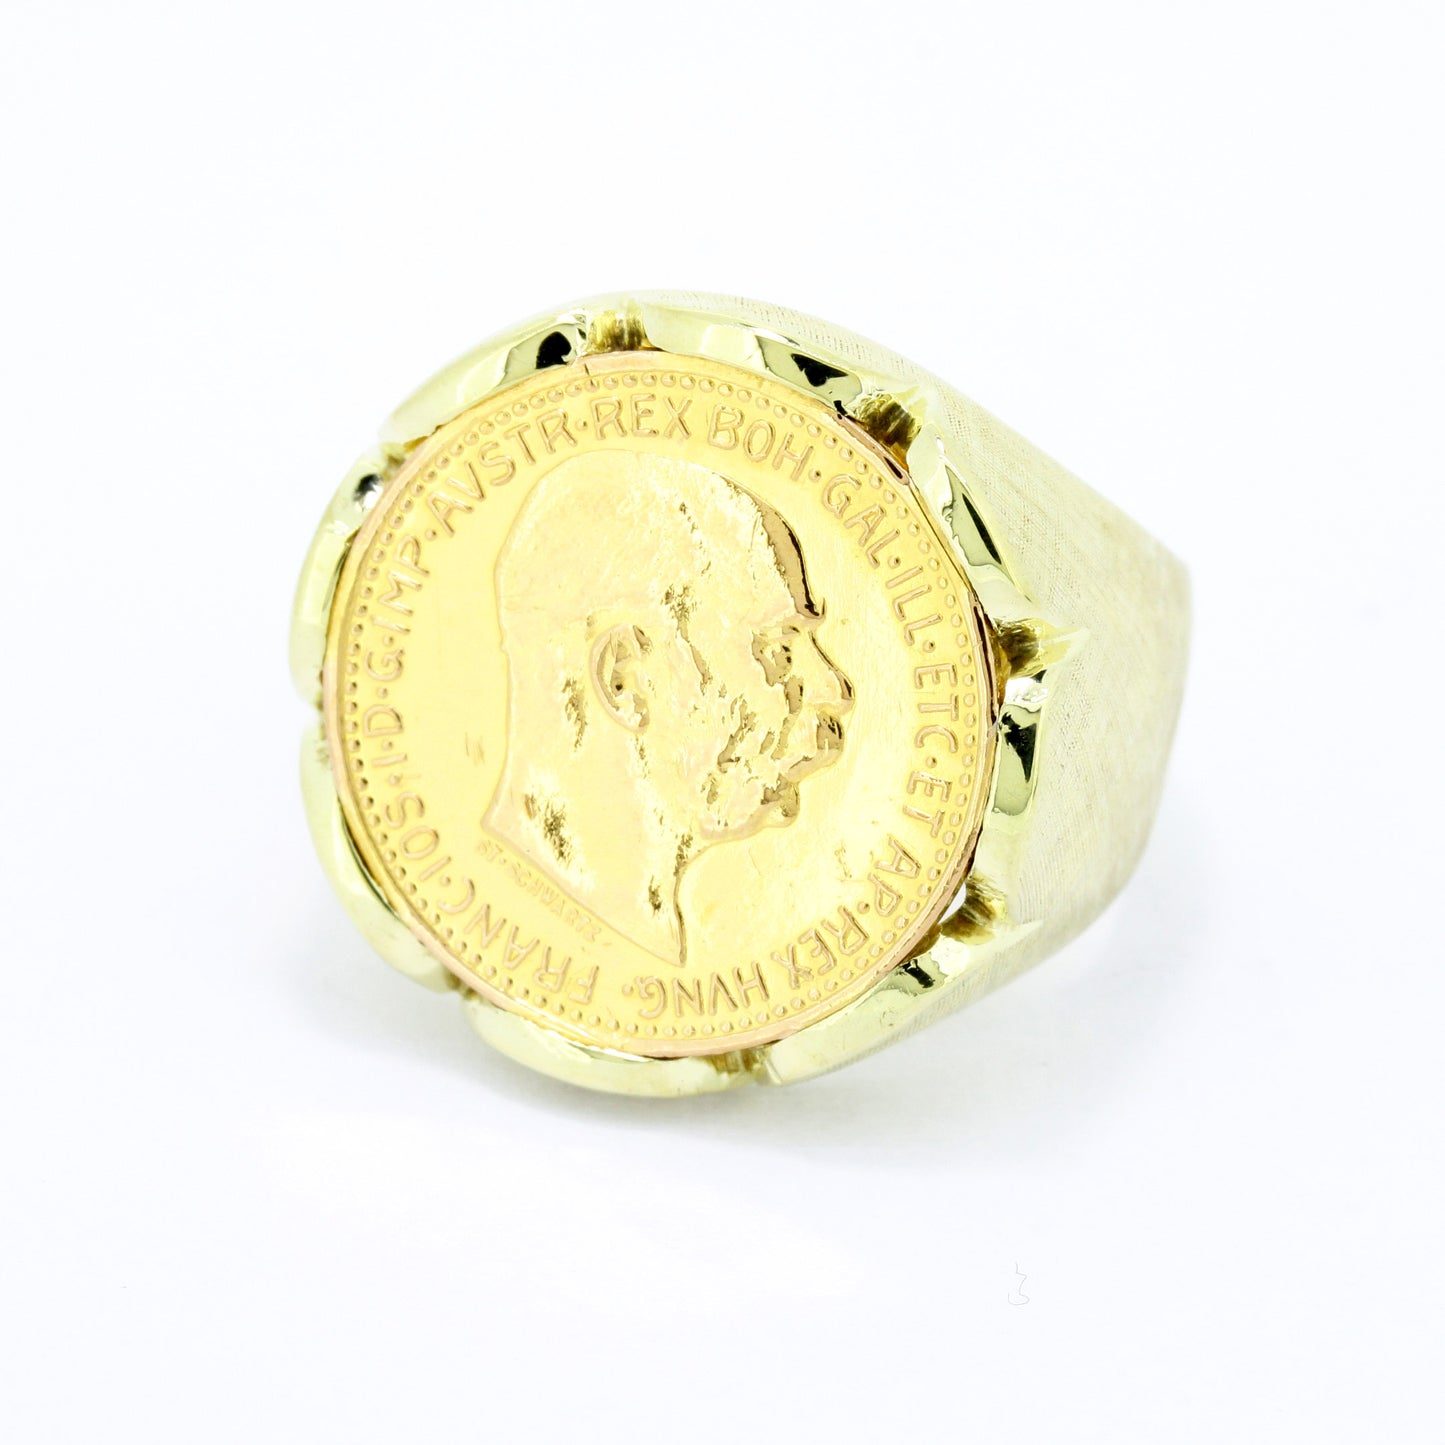 Goldmünze Ring 585 10-Kronen Münze (900) aus Österreich Wert 1640,-